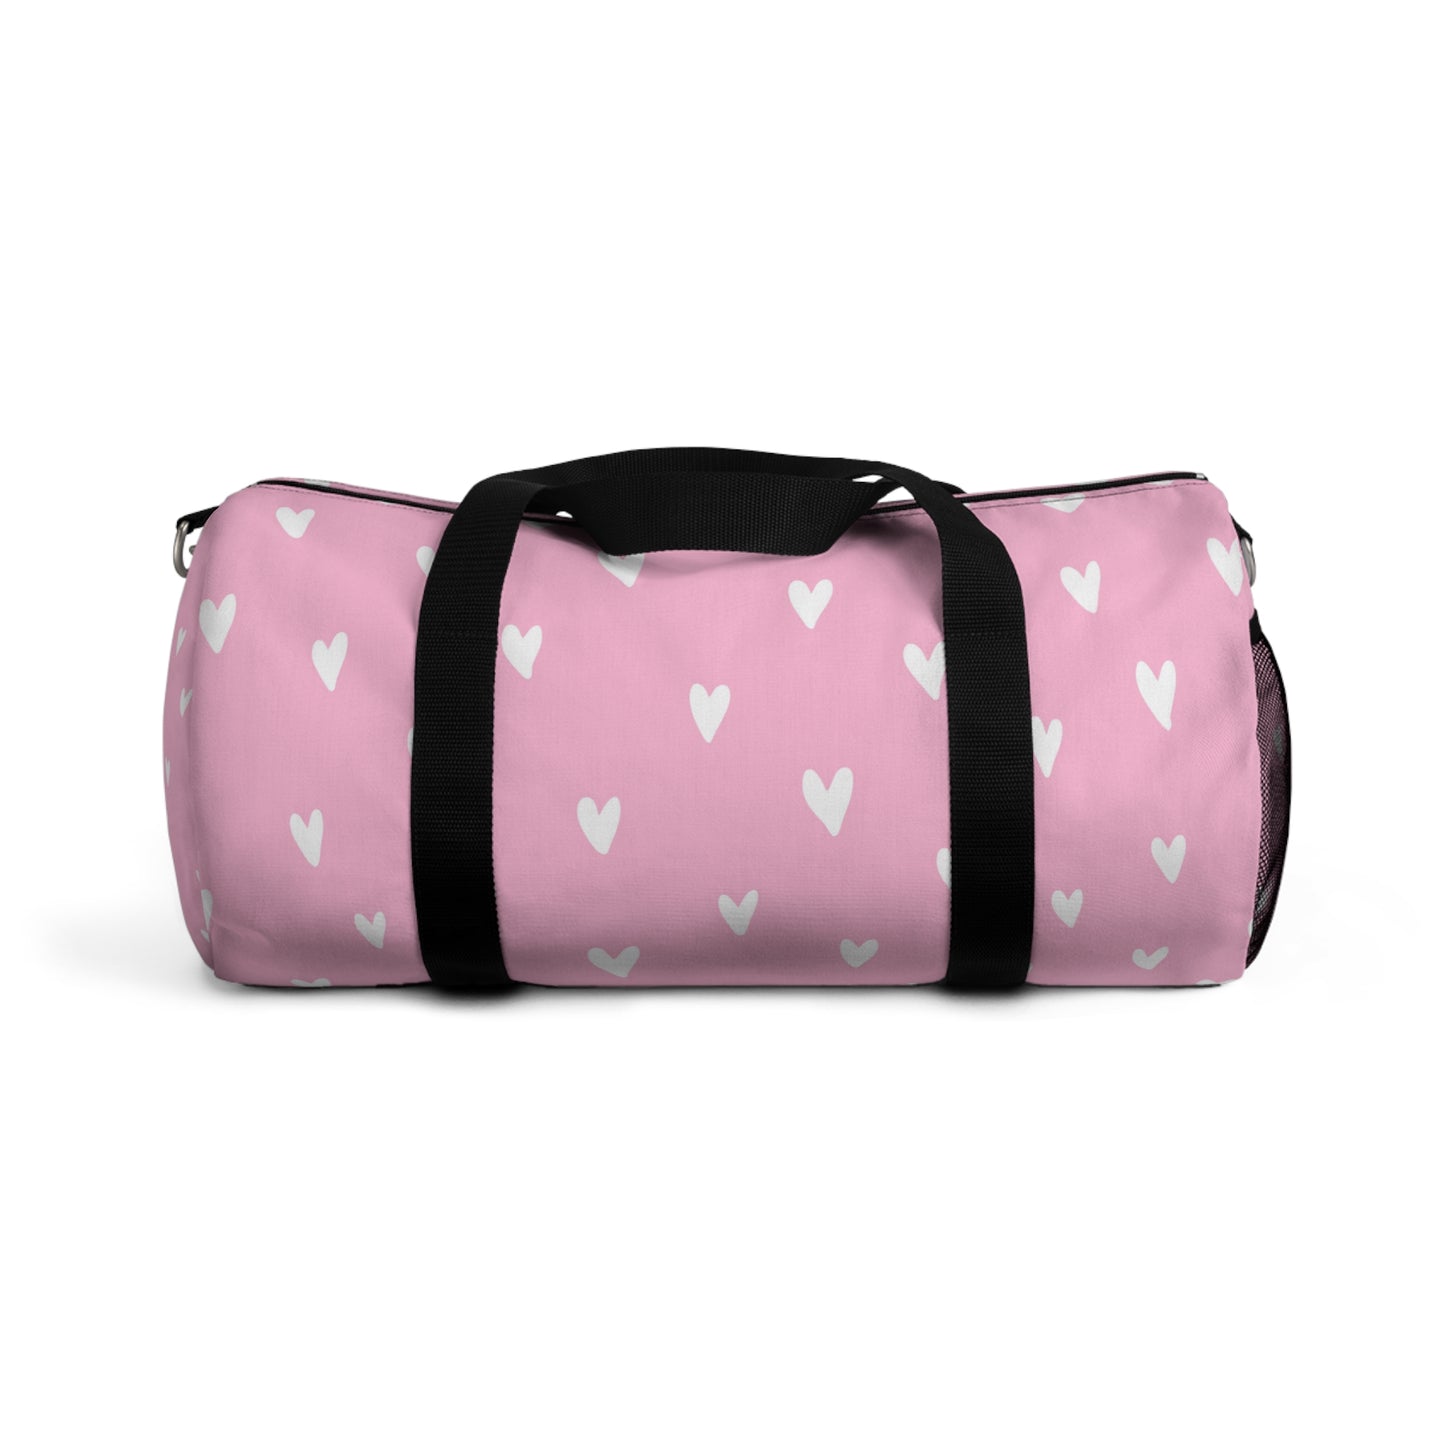 Full of Hearts Pink Duffel Bag